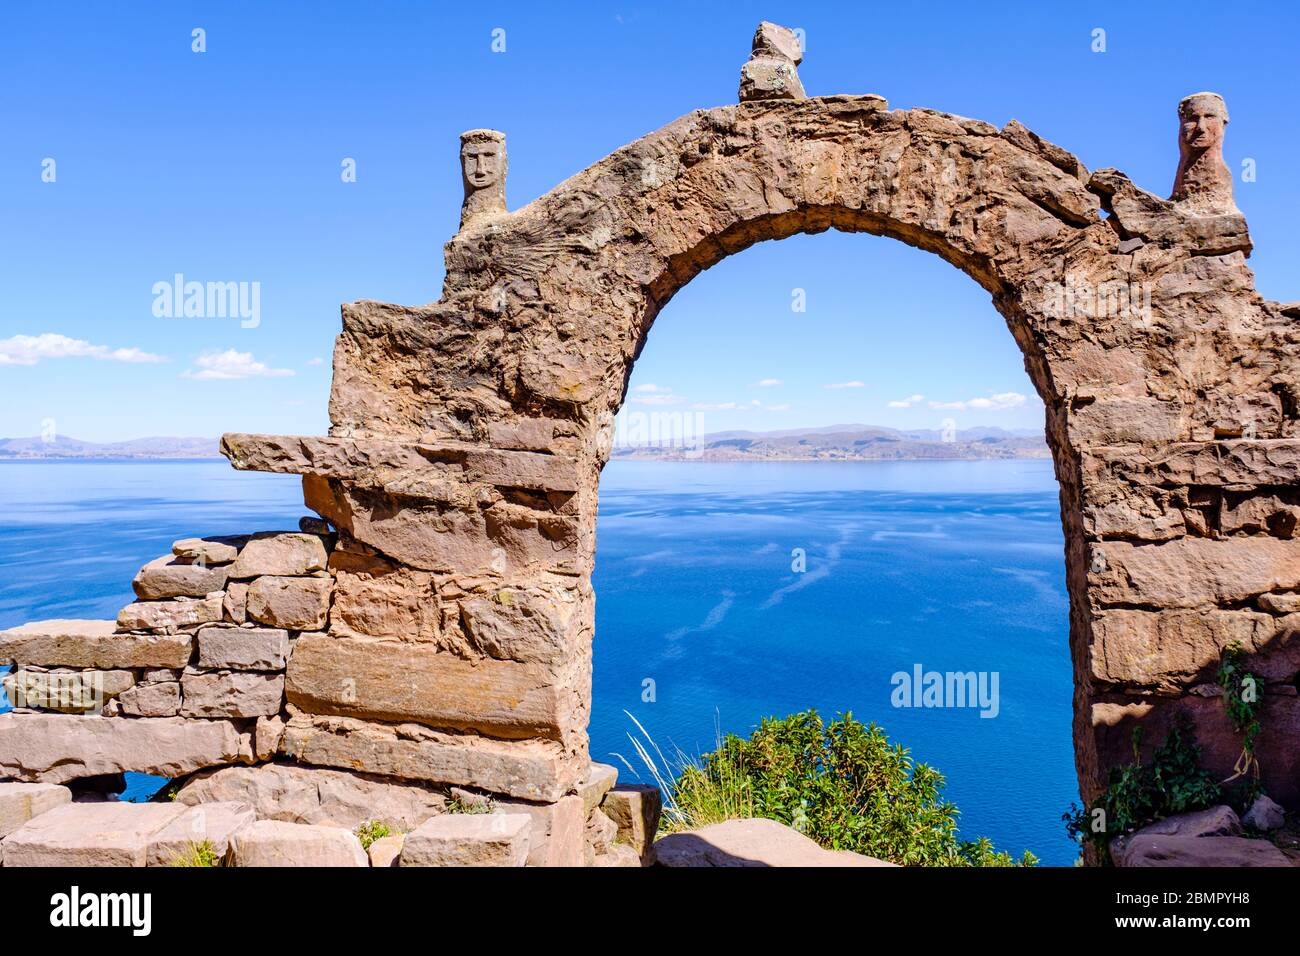 Arche traditionnelle en pierre à Isla Taquile, Lac Titicaca, île de Taquile, Pérou Banque D'Images